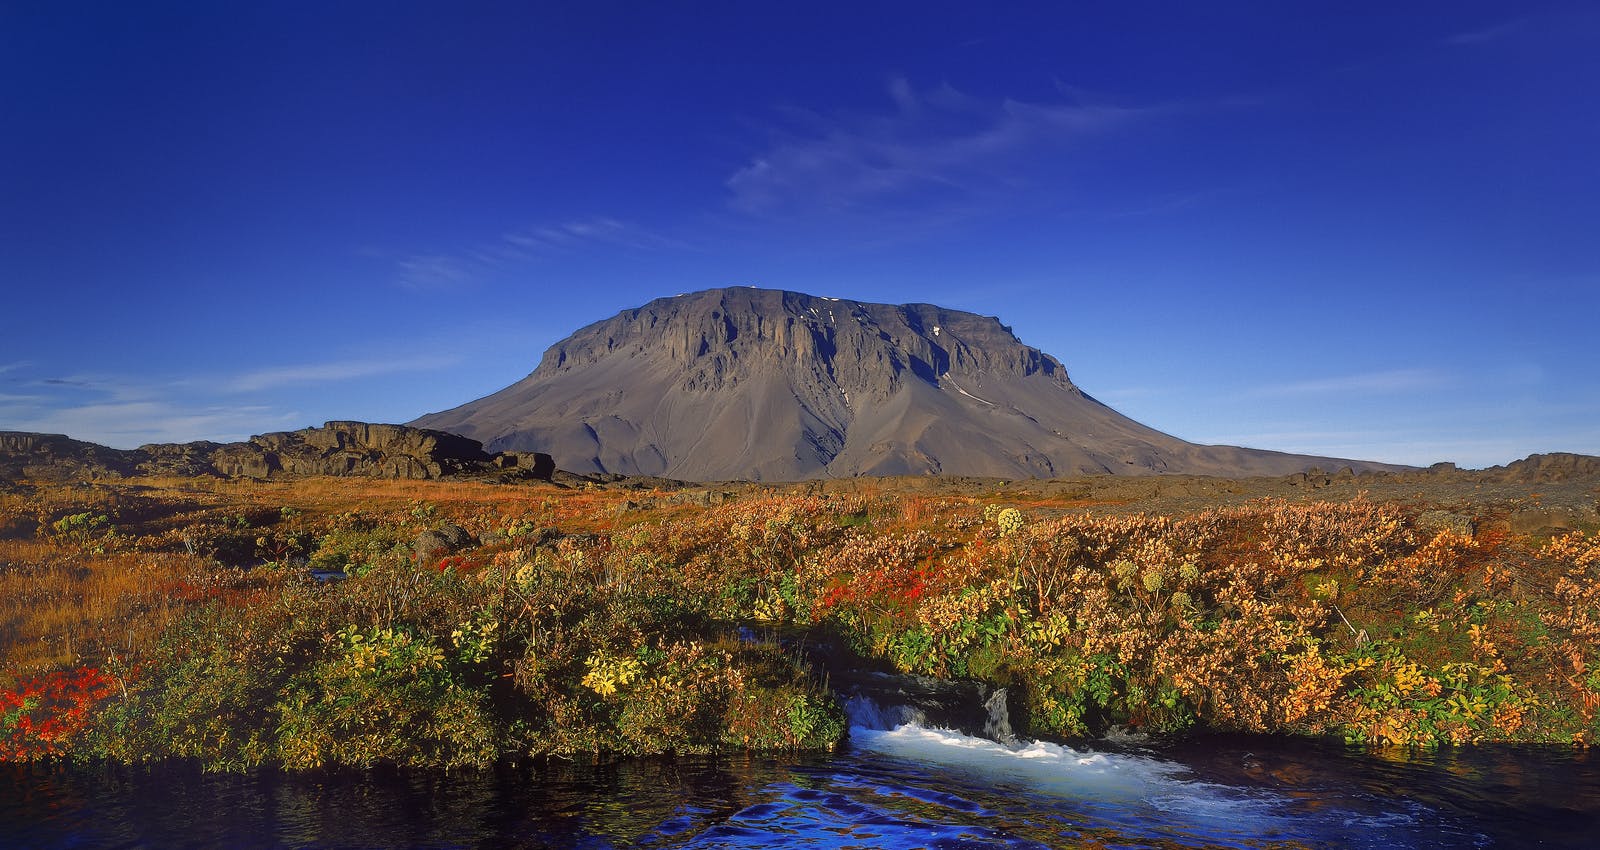 Herðubreið - Queen of Mountains in Iceland